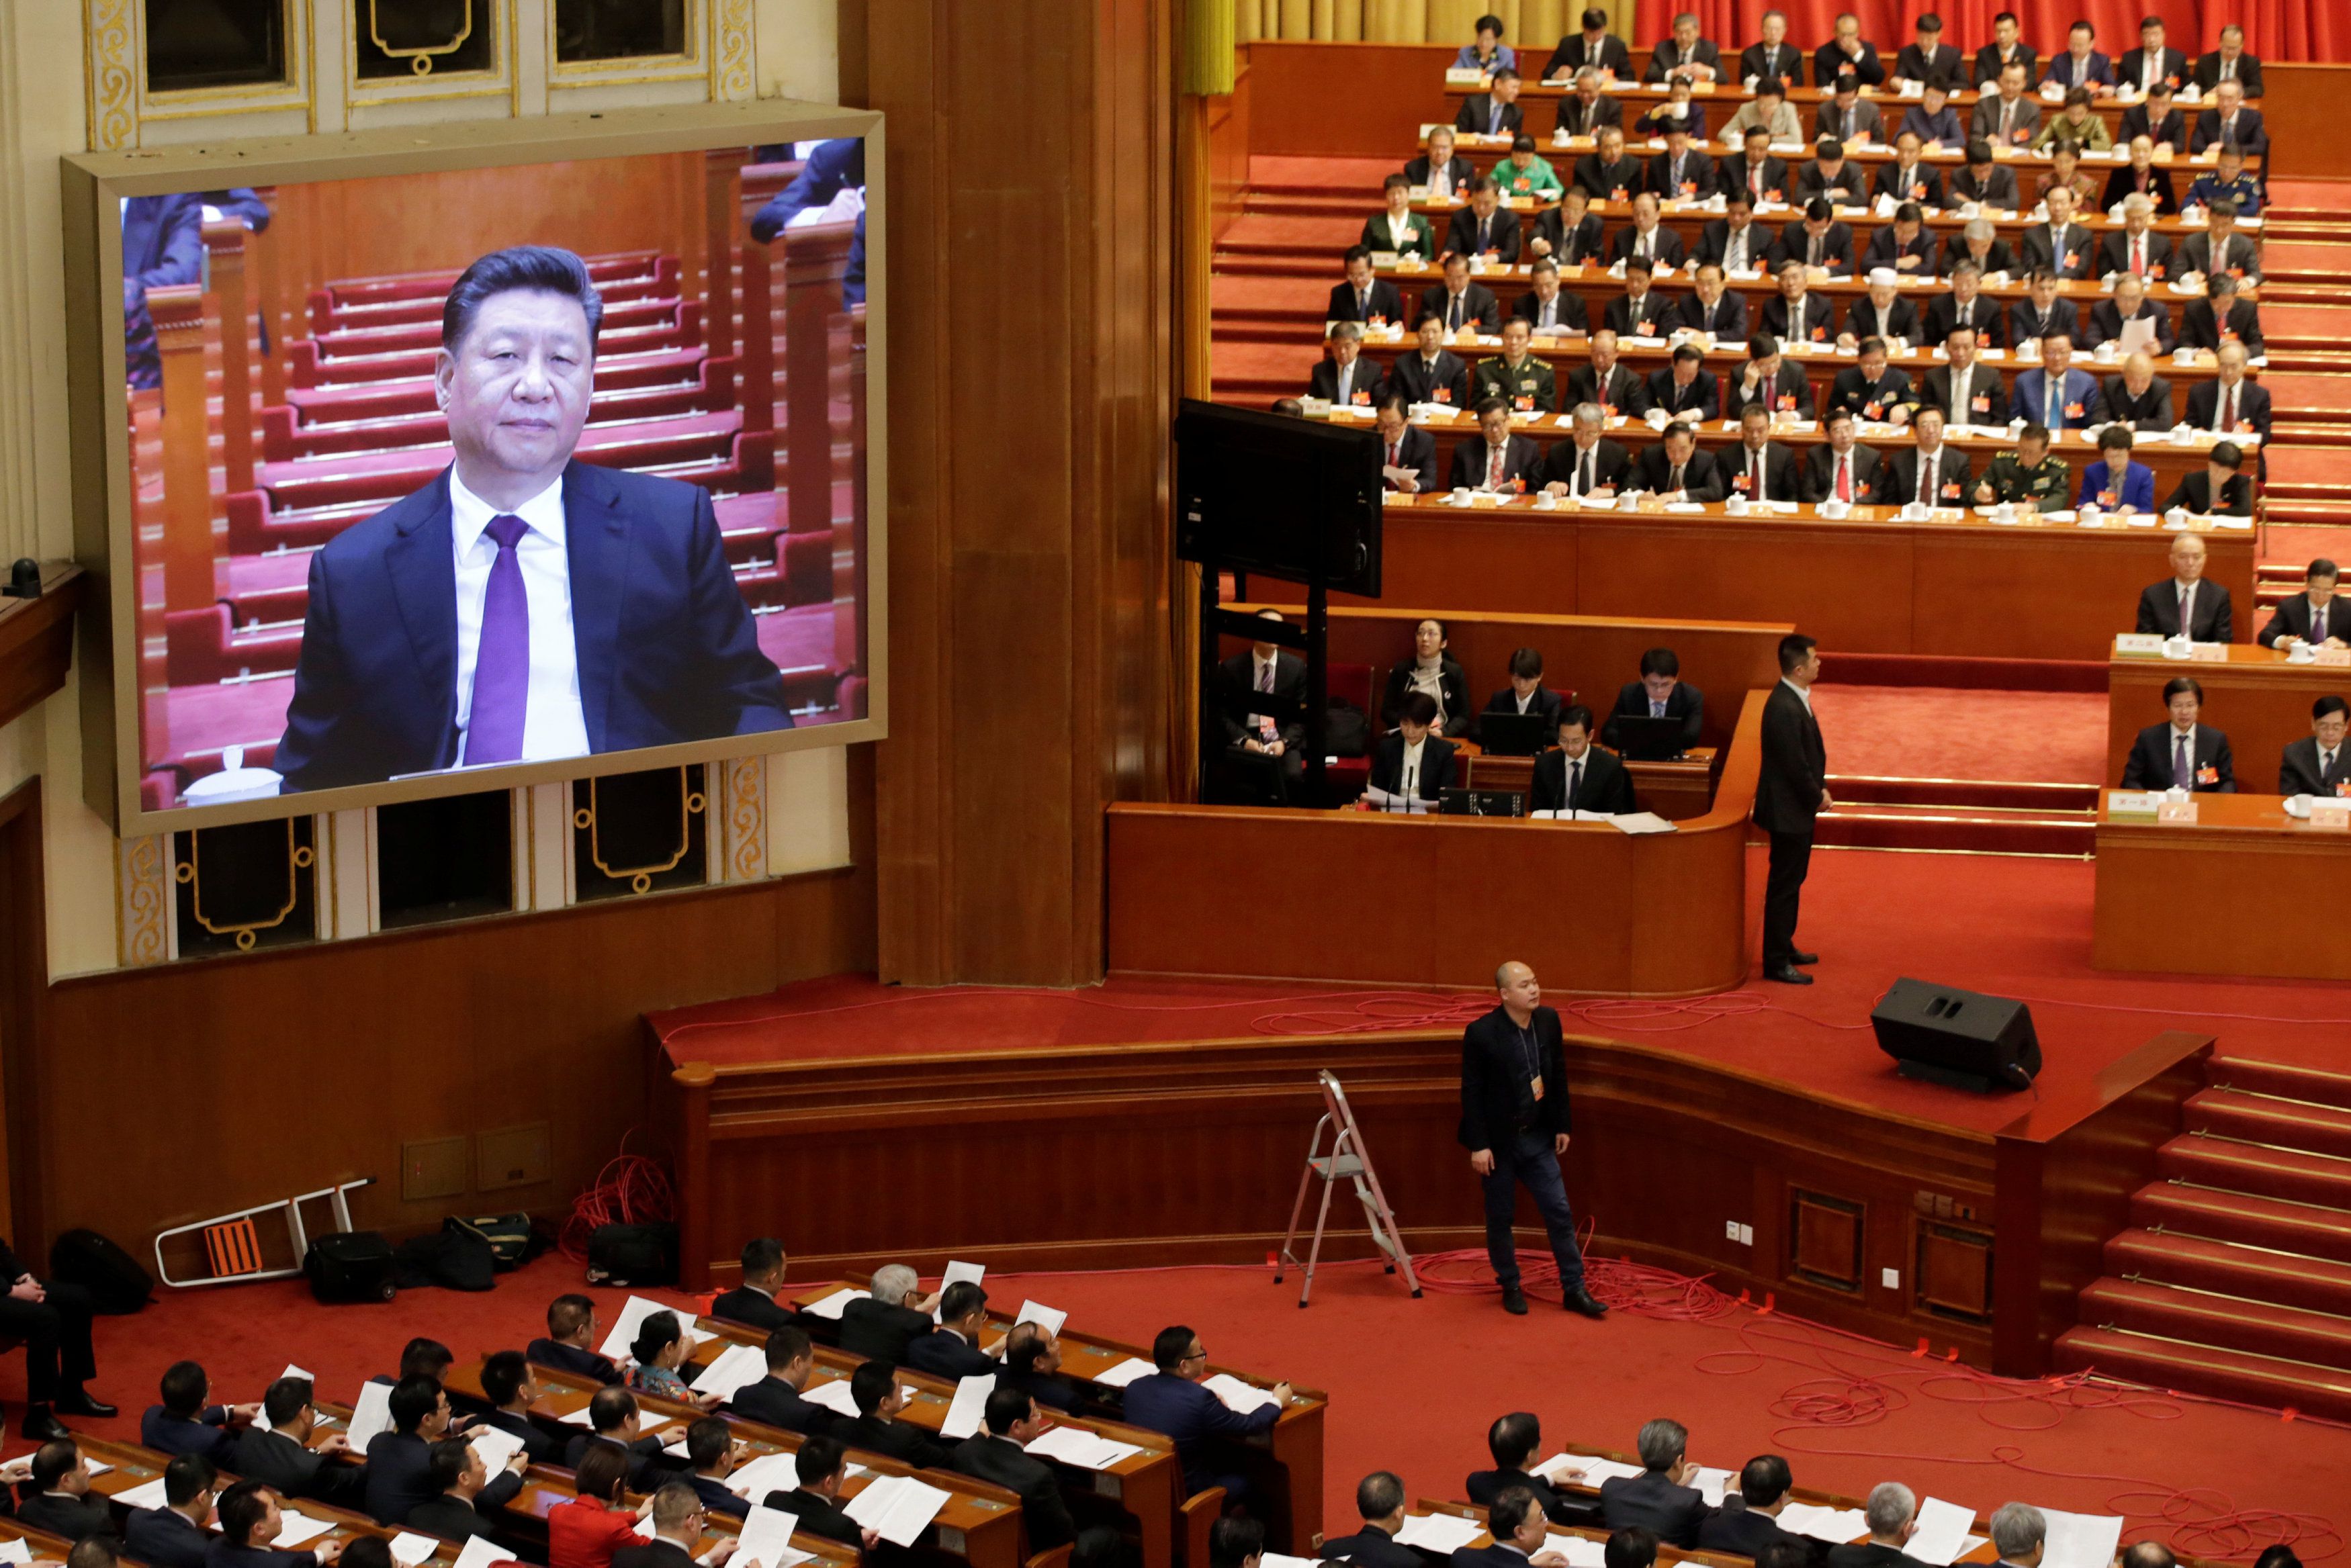 El presidente chino, Xi Jinping, es visto en una pantalla gigante durante la sesión de apertura de la Conferencia Consultiva Política del Pueblo Chino (CPPCC) en el Gran Salón del Pueblo en Beijing, China, el 3 de marzo de 2019. REUTERS / Jason Lee